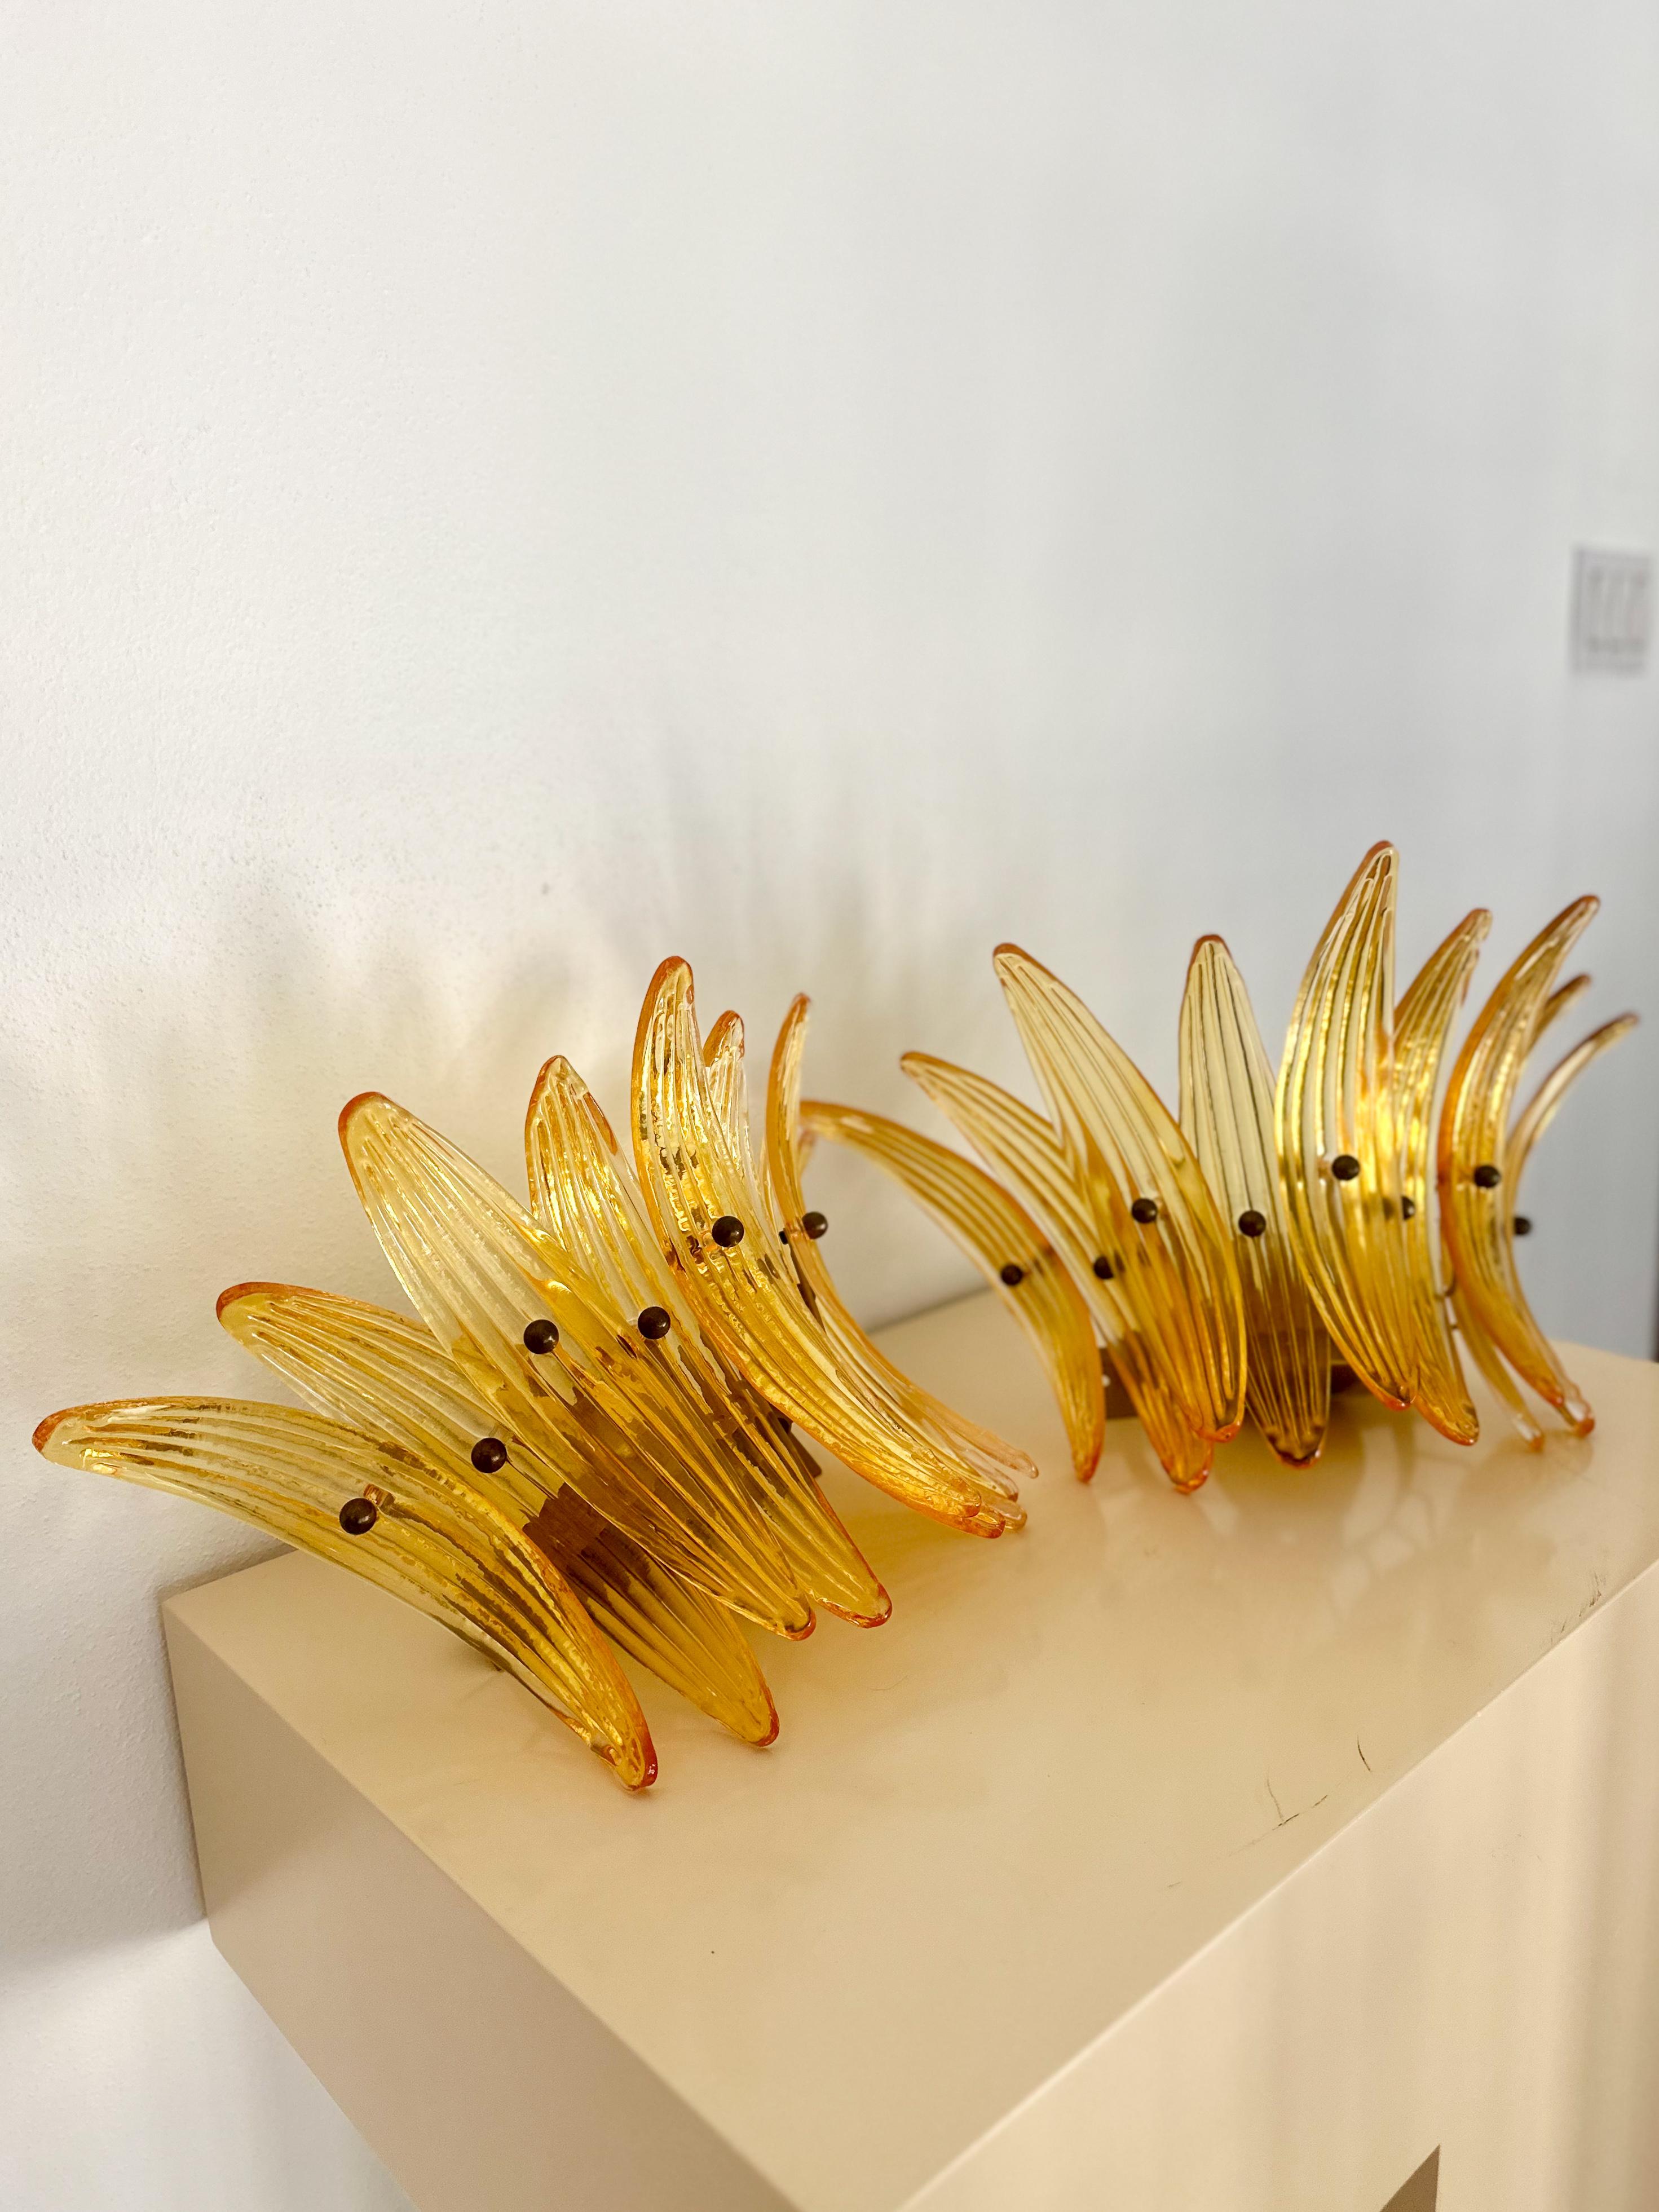 Atemberaubende Wandleuchten aus mundgeblasenem Murano-Glas, ca. 1990er Jahre. Jede Leuchte verfügt über 9 konkave Applikationen aus bernsteinfarbenem, geriffeltem Glas, die mit Messingbeschlägen in einem Palmenmuster am Rahmen befestigt sind. Farbe